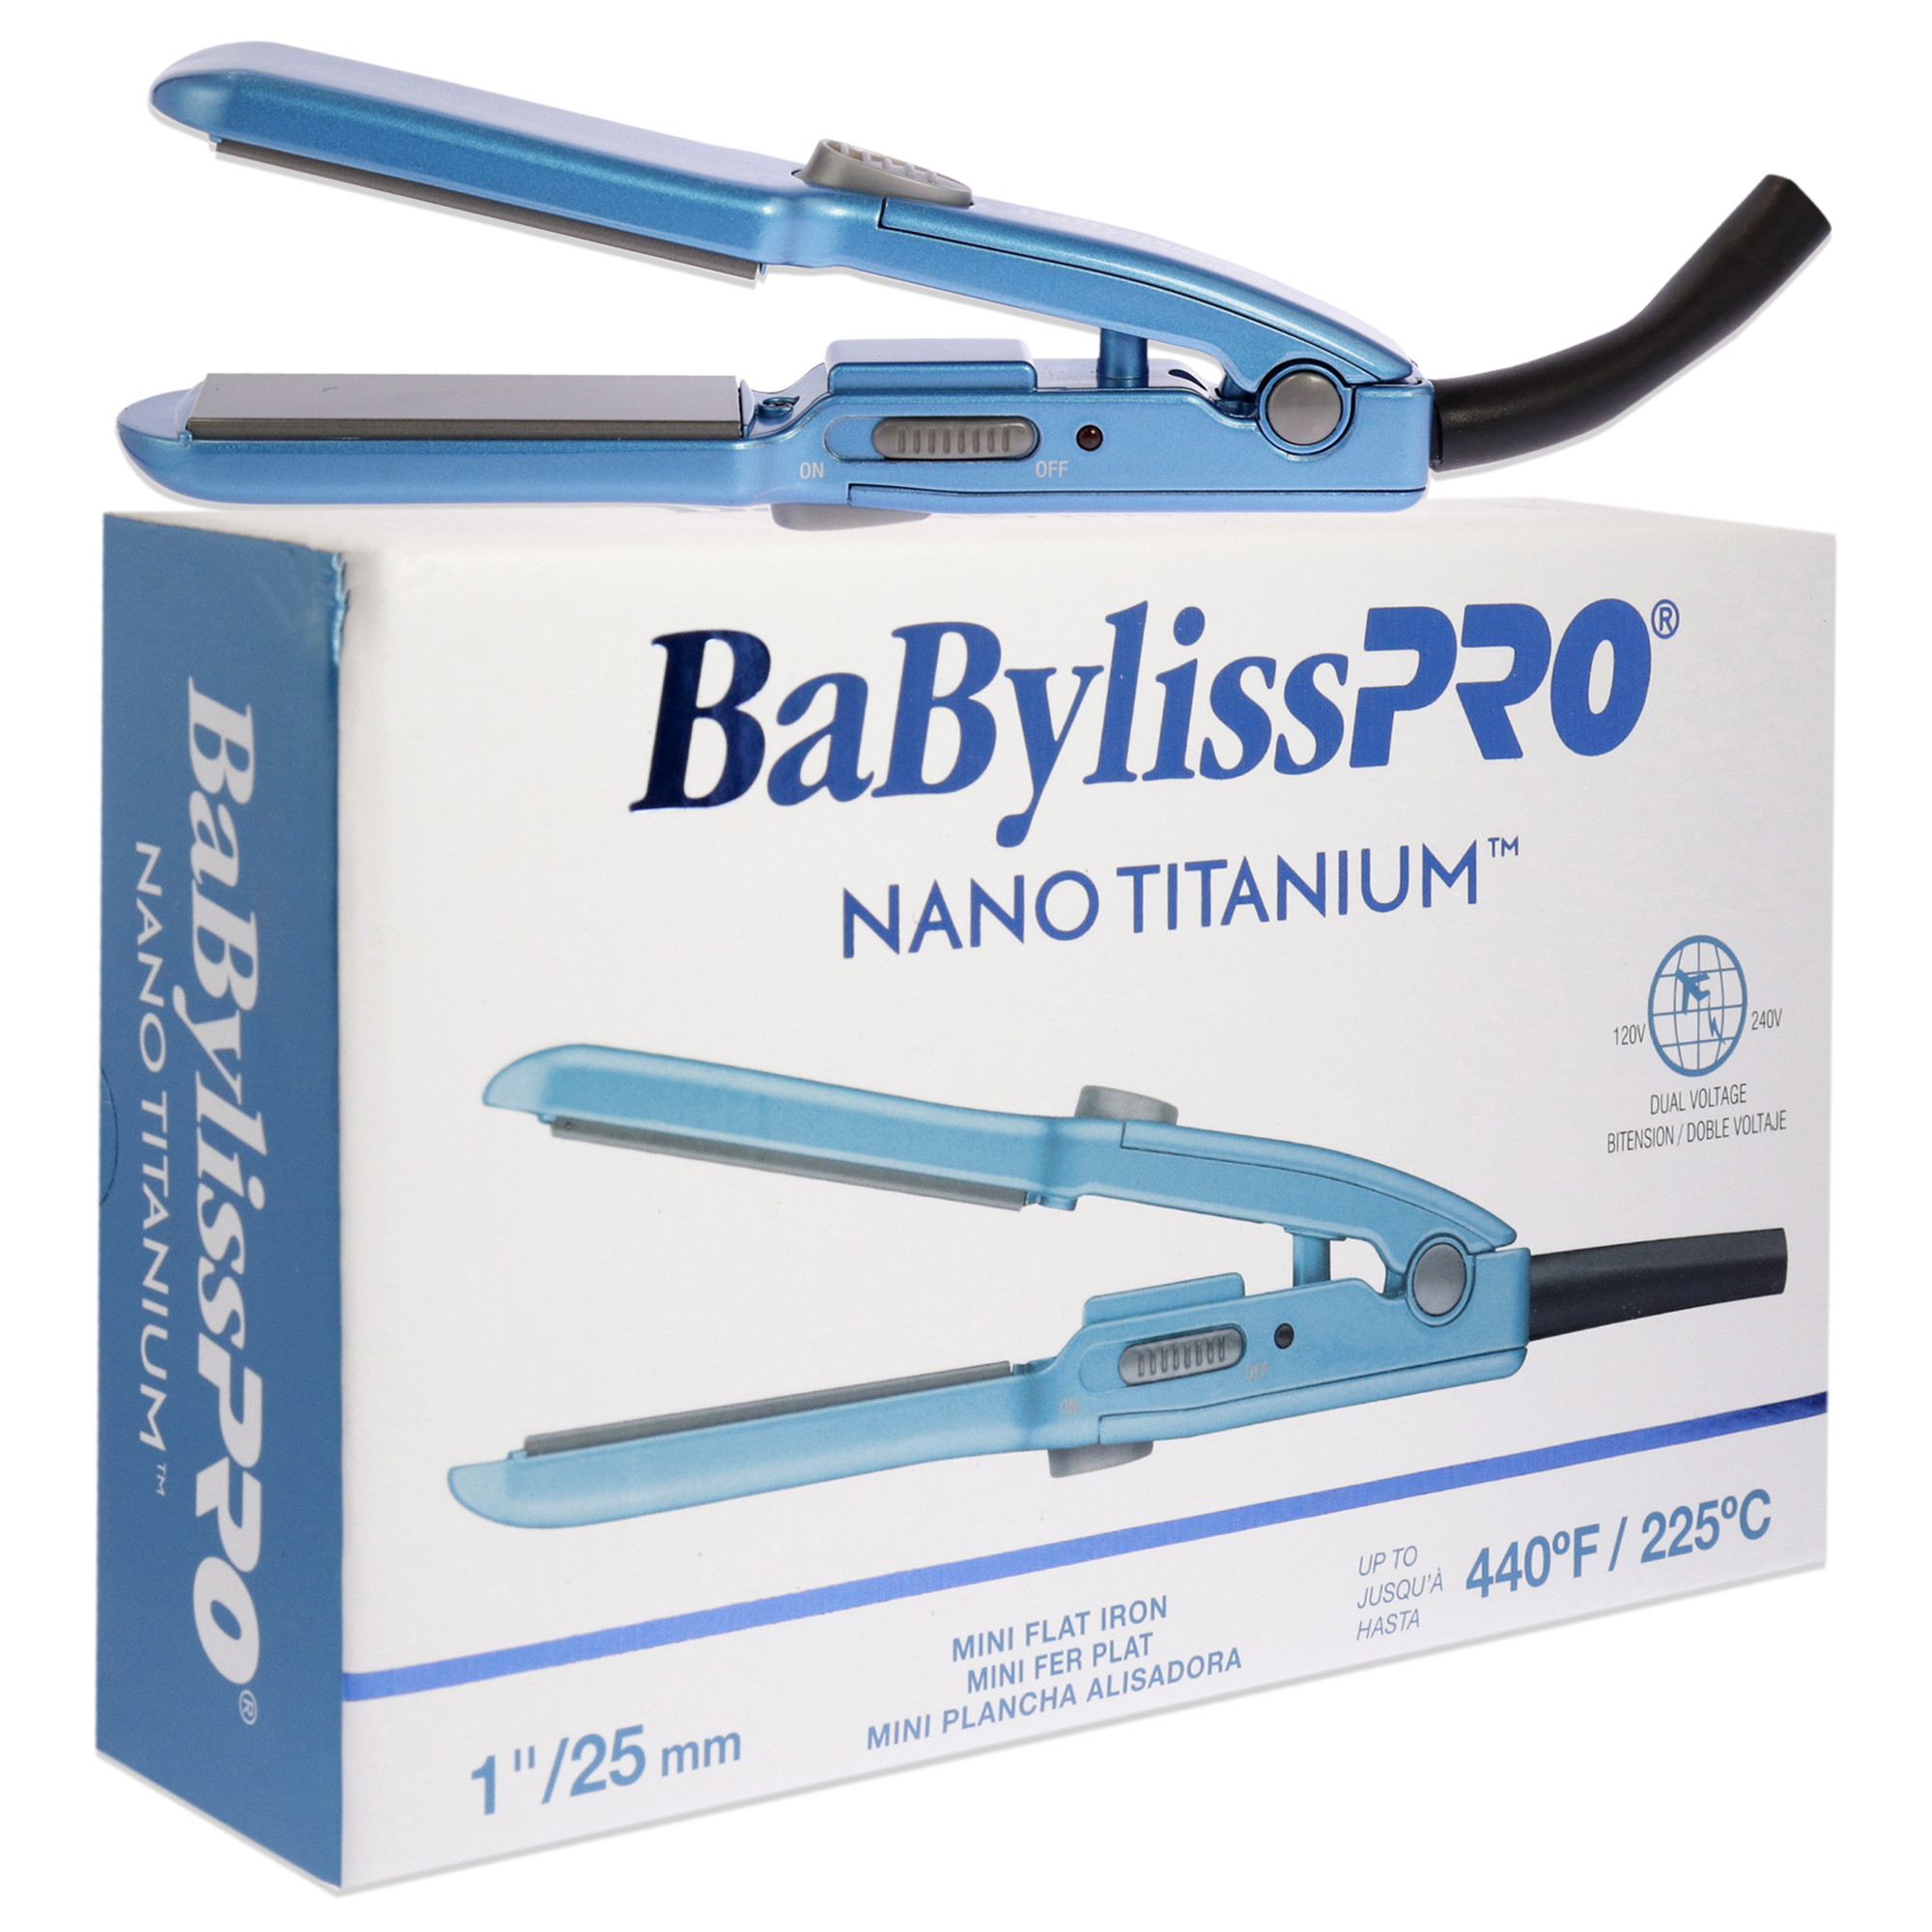 BaBylissPRO Nano Titanium Mini Flat Iron - BNT3053UC - Blue, 1 Inch Flat Iron - image 3 of 4